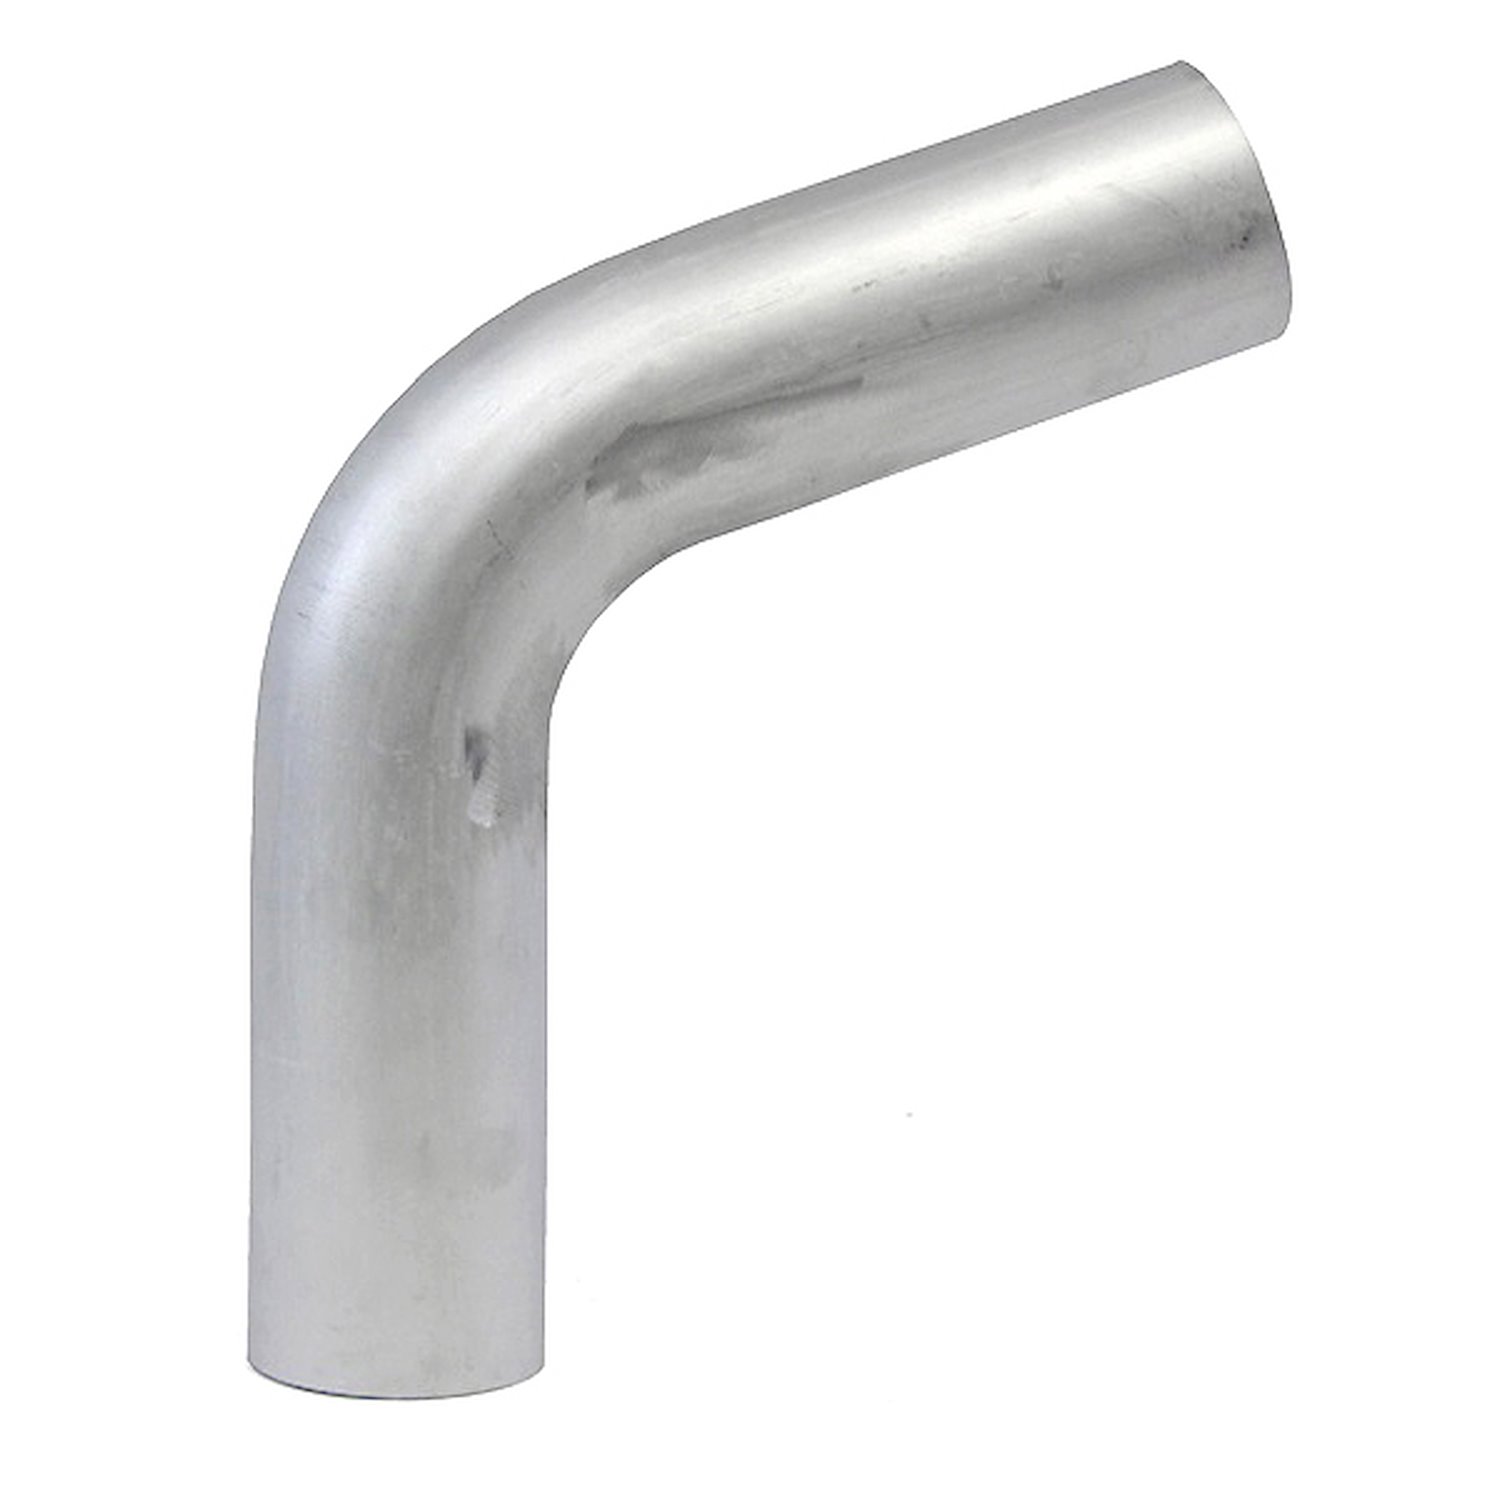 AT70-200-CLR-312 Aluminum Elbow Tube, 6061 Aluminum, 70-Degree Bend Elbow Tubing, 2 in. OD, Large Radius, 3 1/8 in. CLR